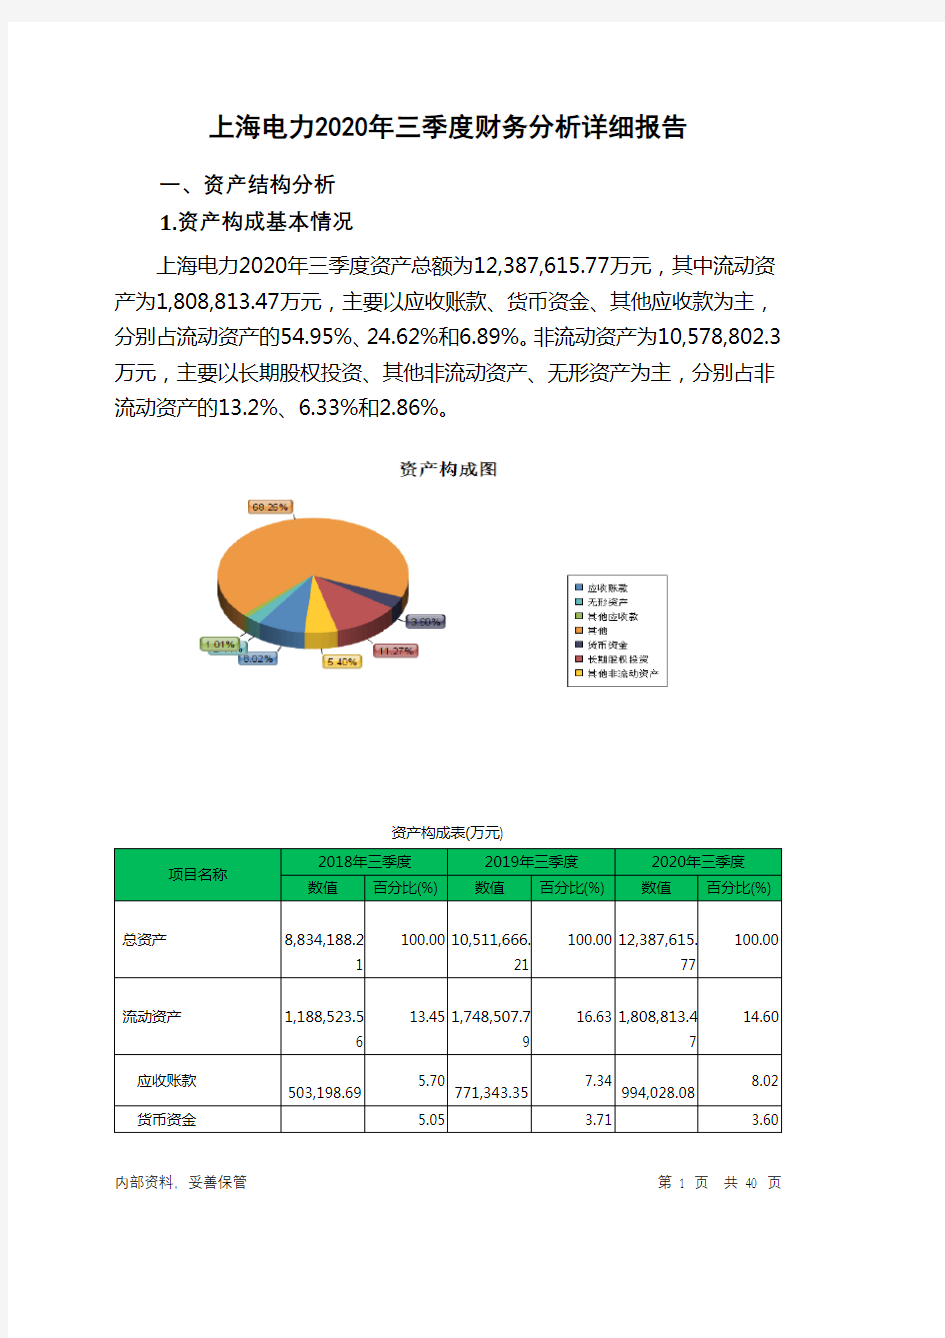 上海电力2020年三季度财务分析详细报告